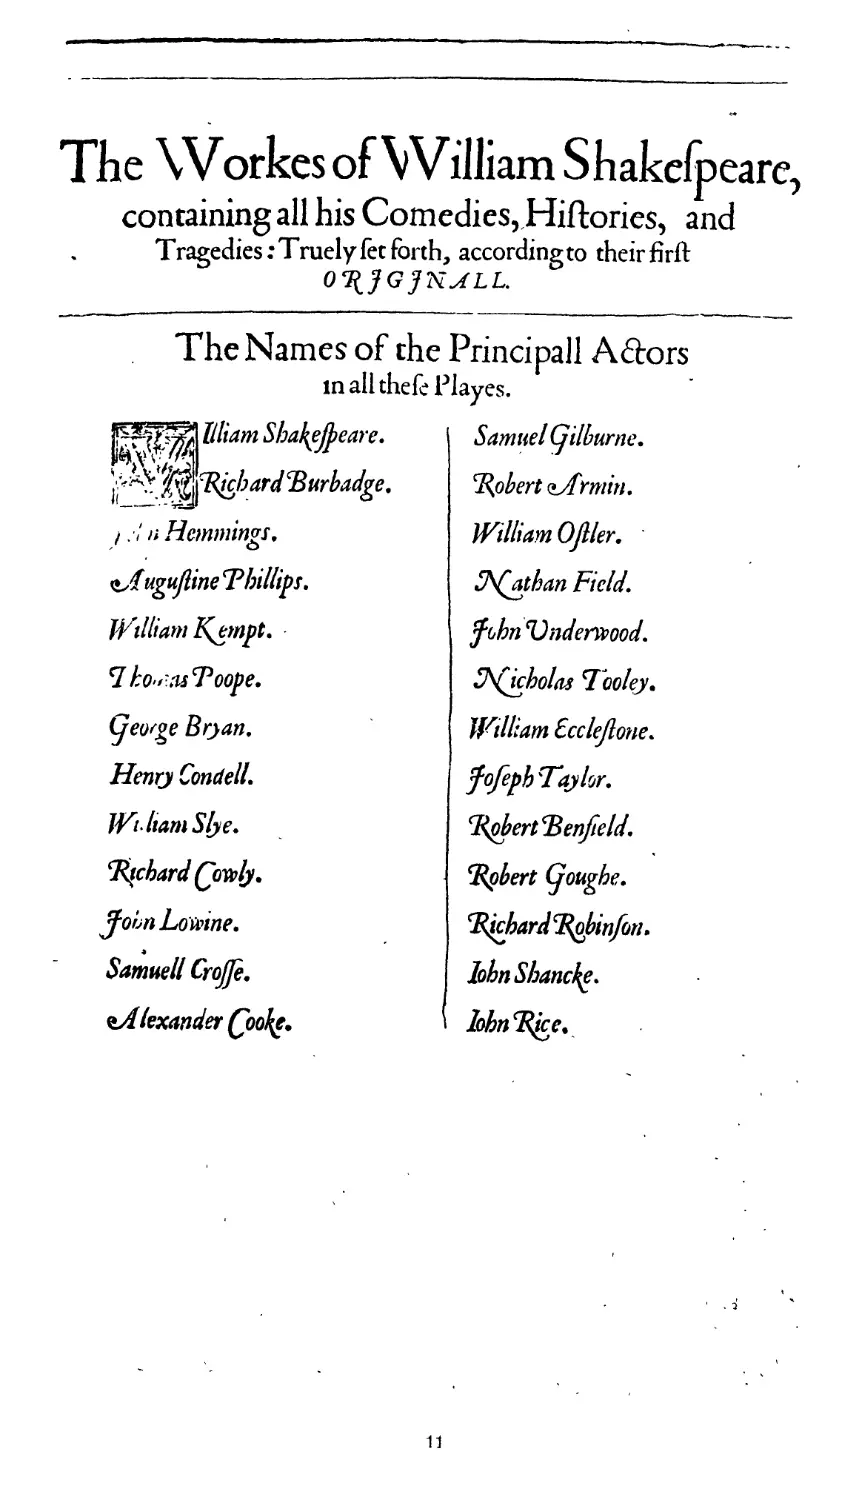 Names of the Principall Actors, p. 11